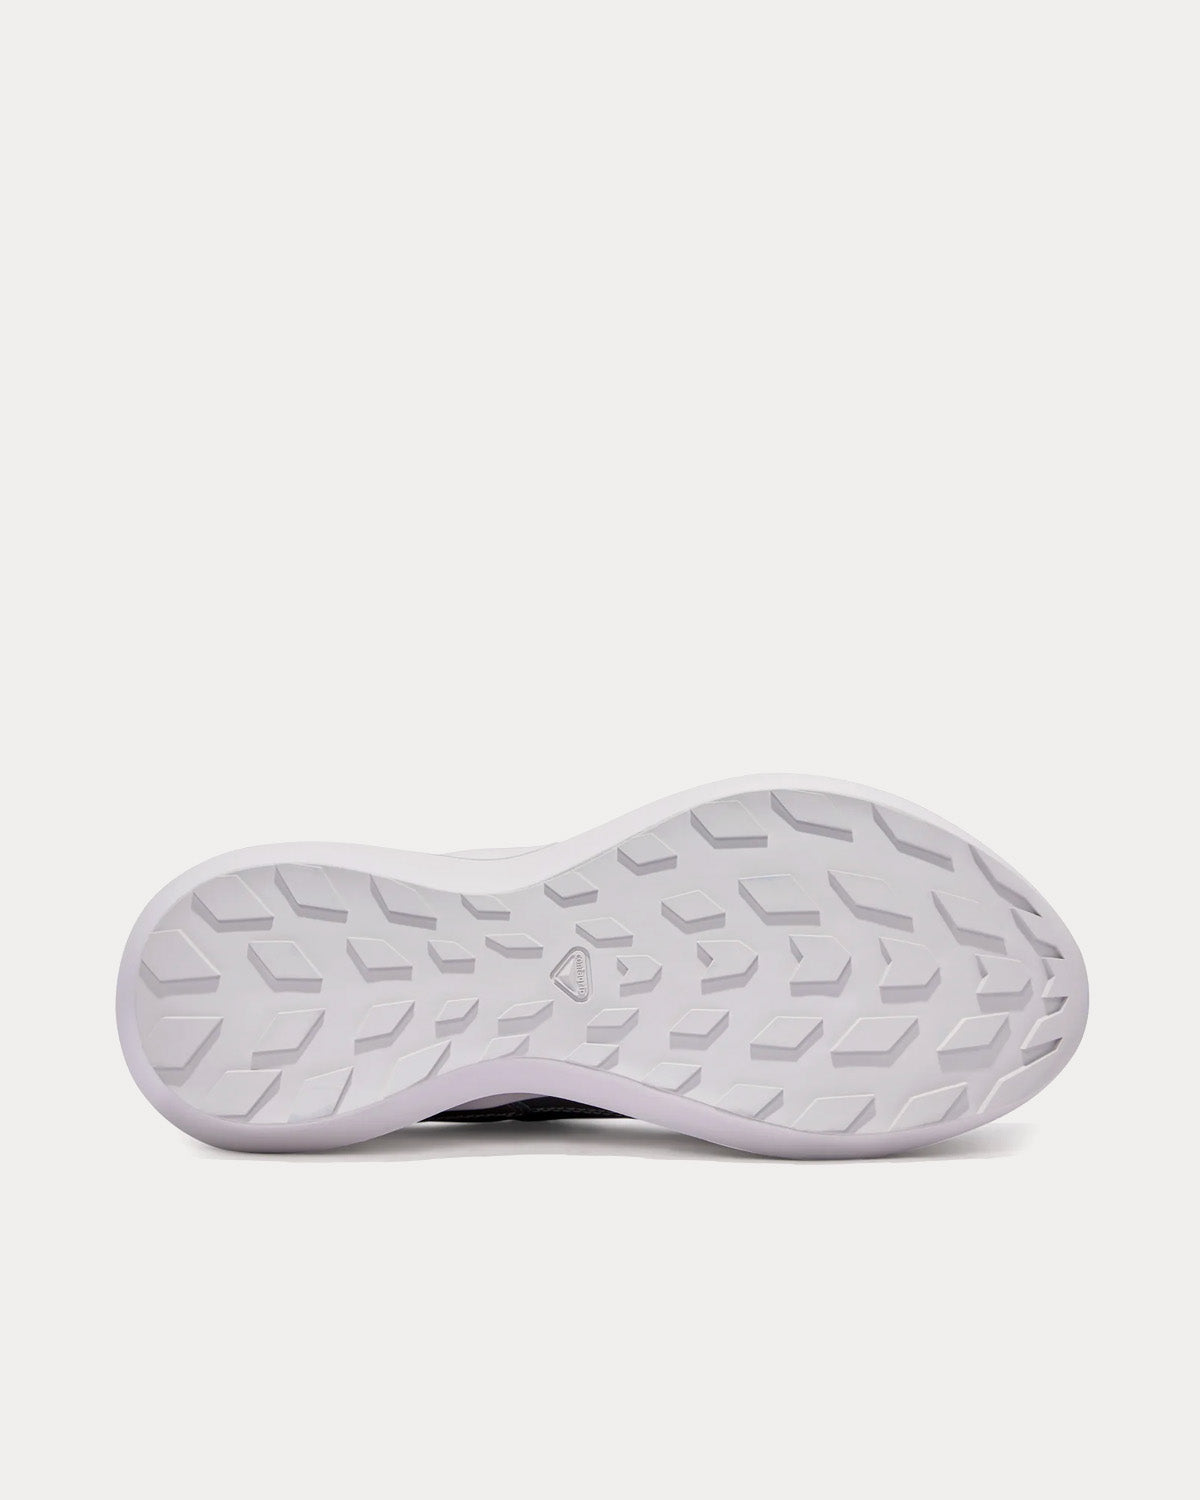 Salomon x Comme des Garçons - SR811 Platform Leather Silver Low Top Sneakers